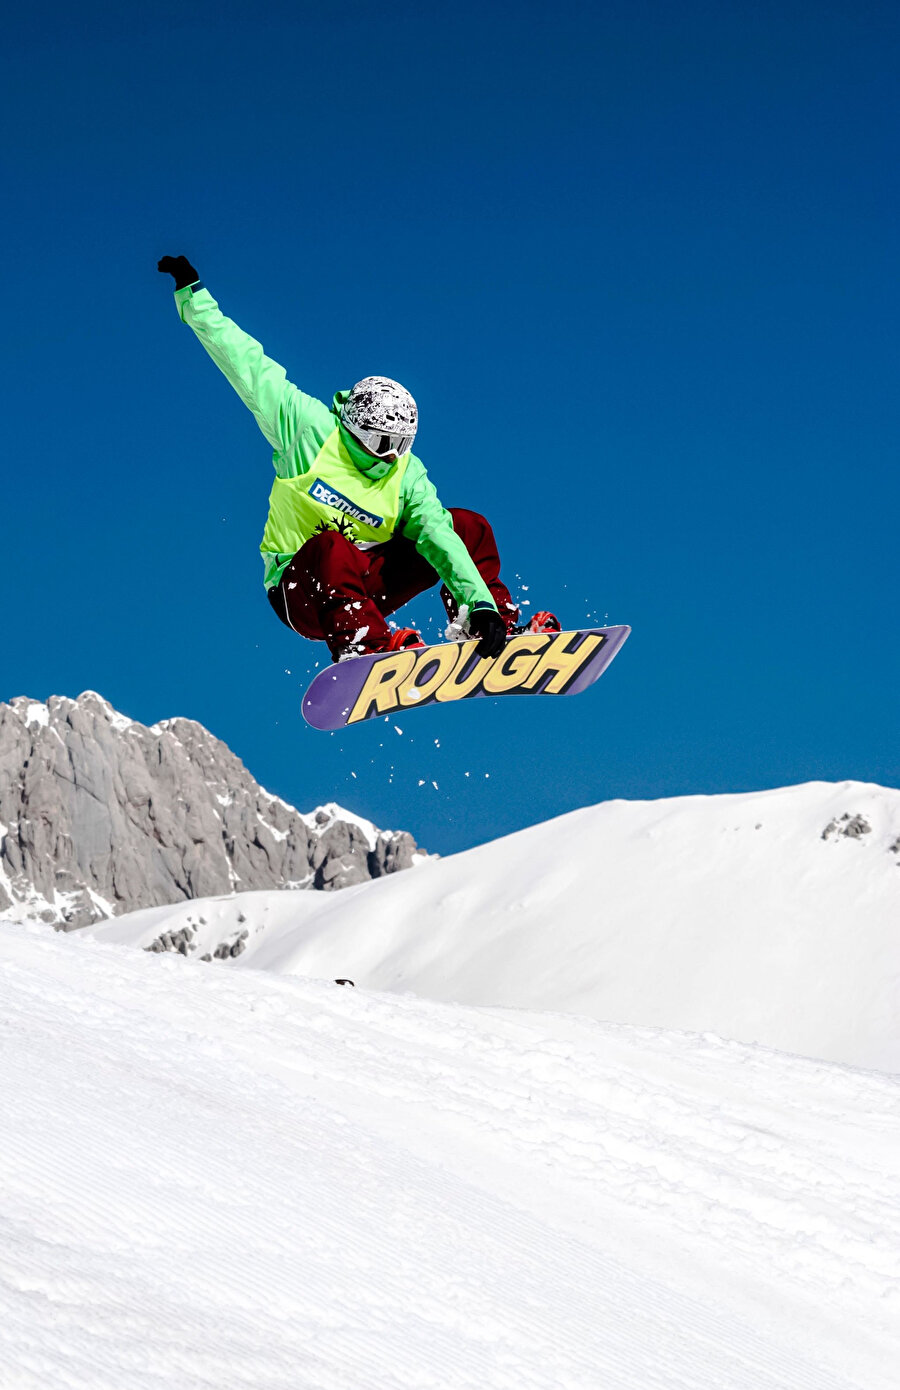 Türkiye’deki snowboard’u dünyadakiyle karşılaştırdığımızda arada büyük bir fark yok.